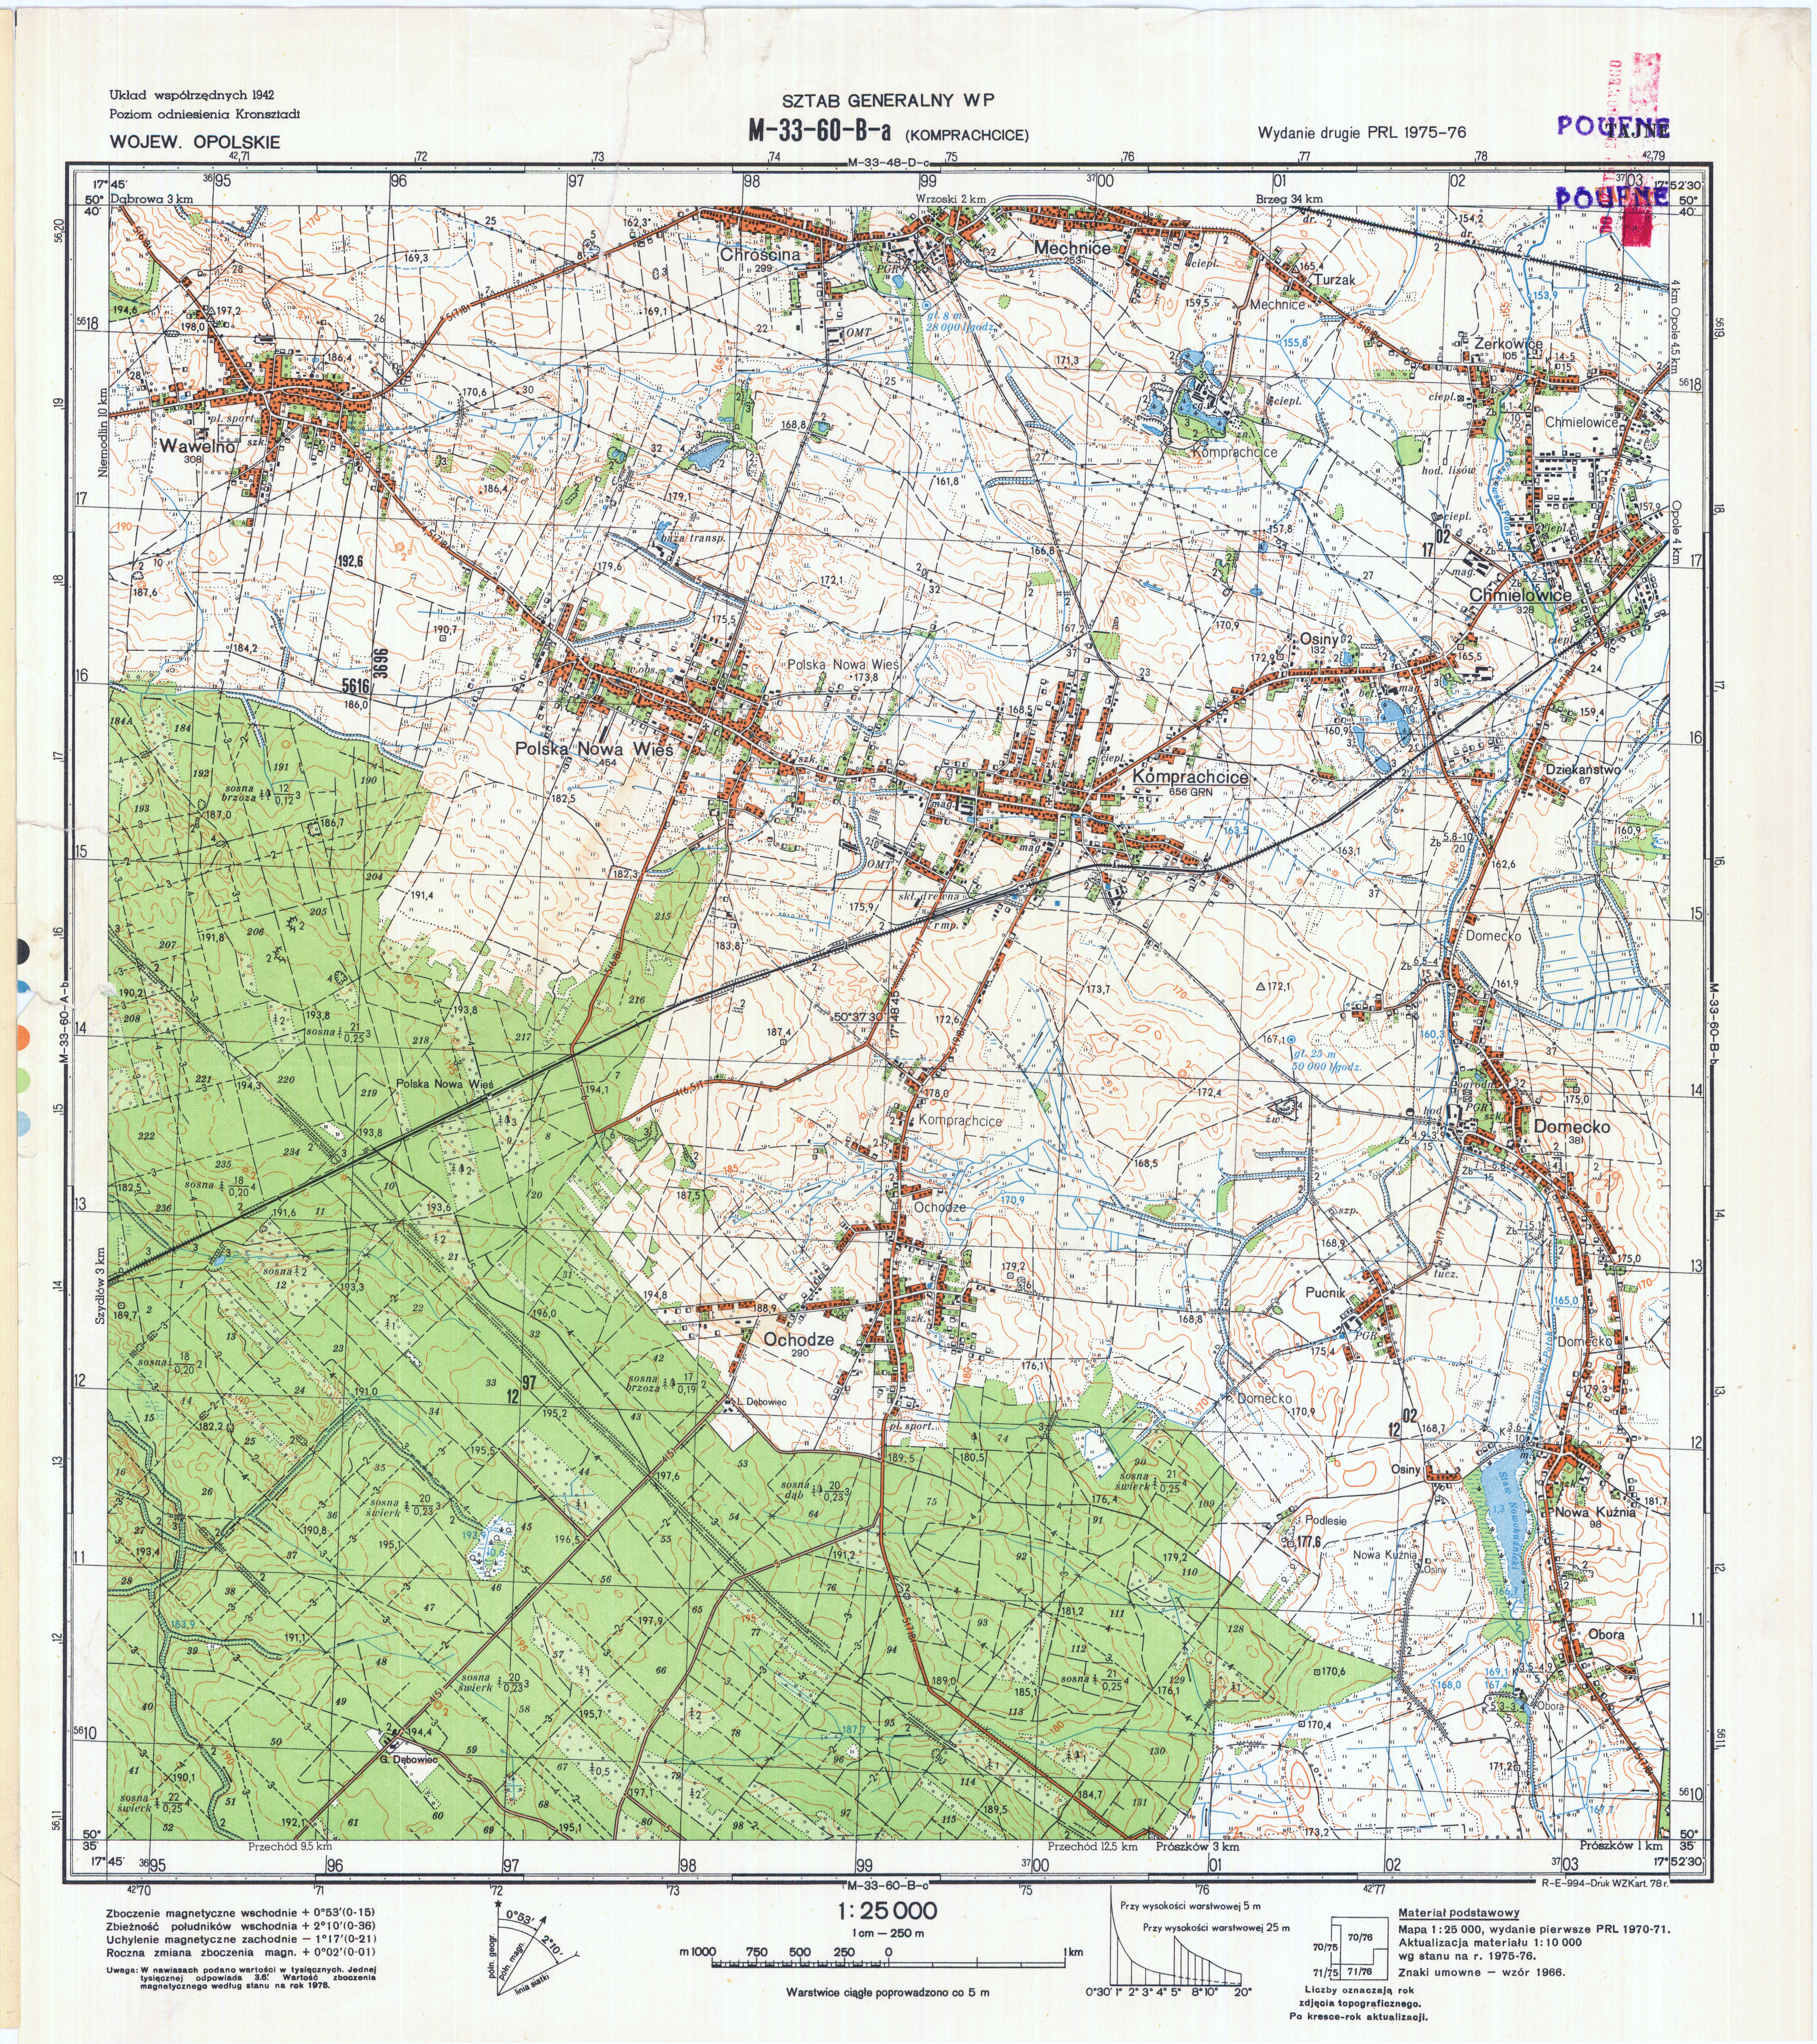 Mapy topograficzne LWP 1_25 000 - M-33-60-B-a_KOMPRACHCICE_1978.jpg